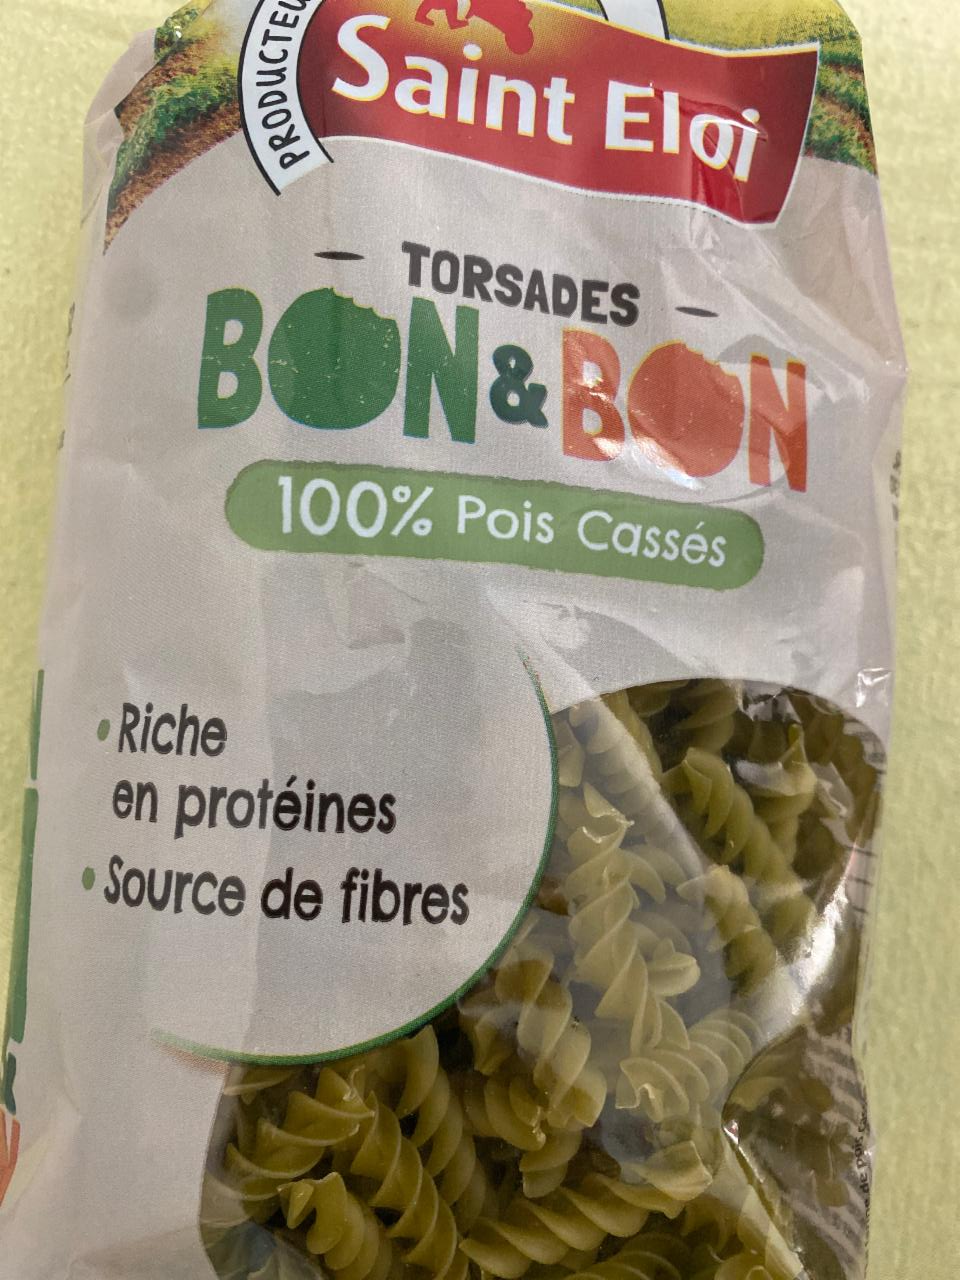 Fotografie - Bon & Bon Torsades 100% Pois Cassés Saint Eloi